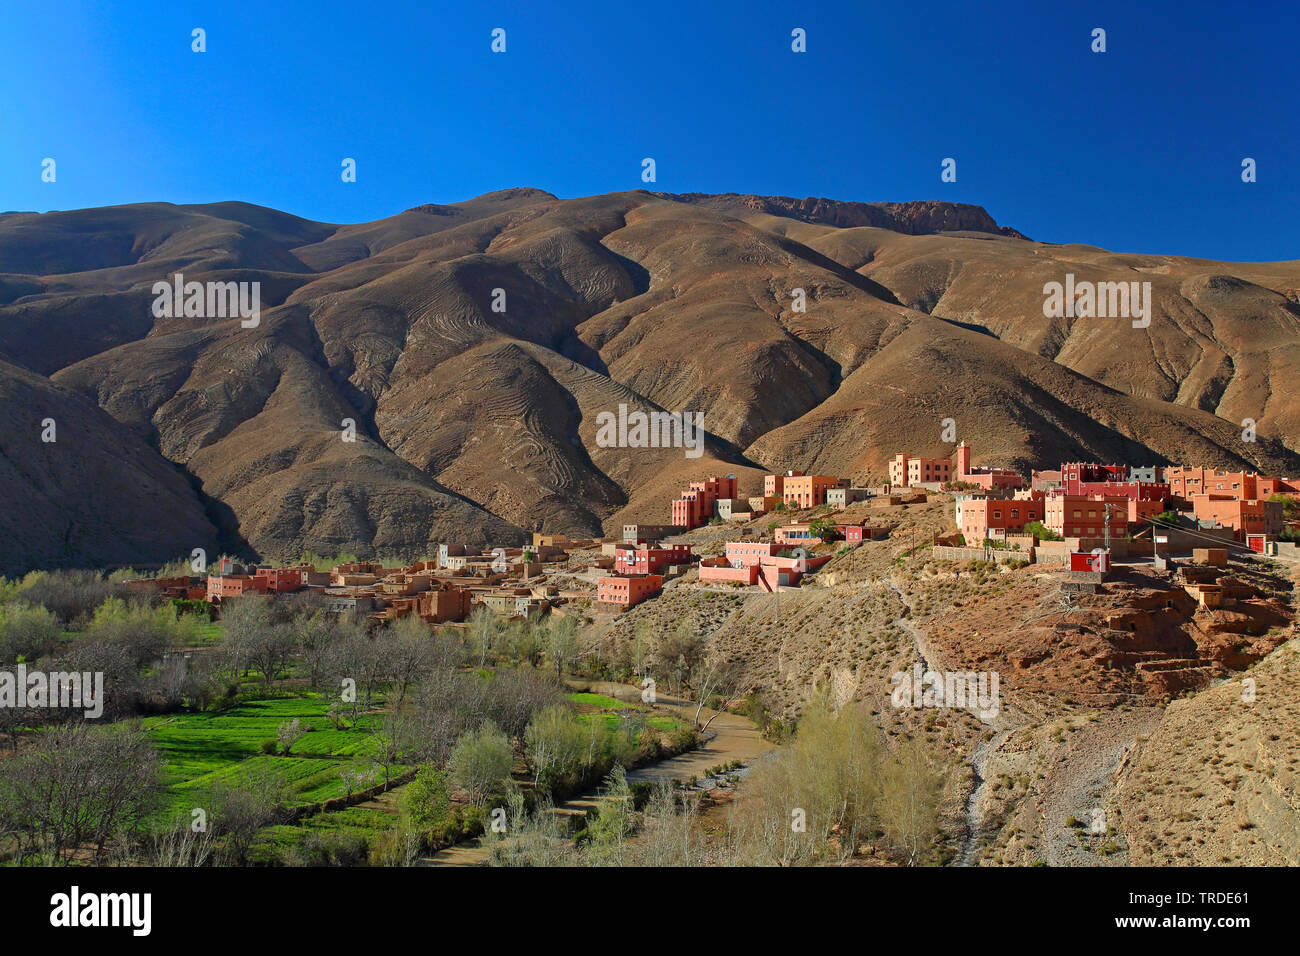 Beber Dorf in der Dades Schluchten, Marokko Dades Tal, Imdiazene Stockfoto